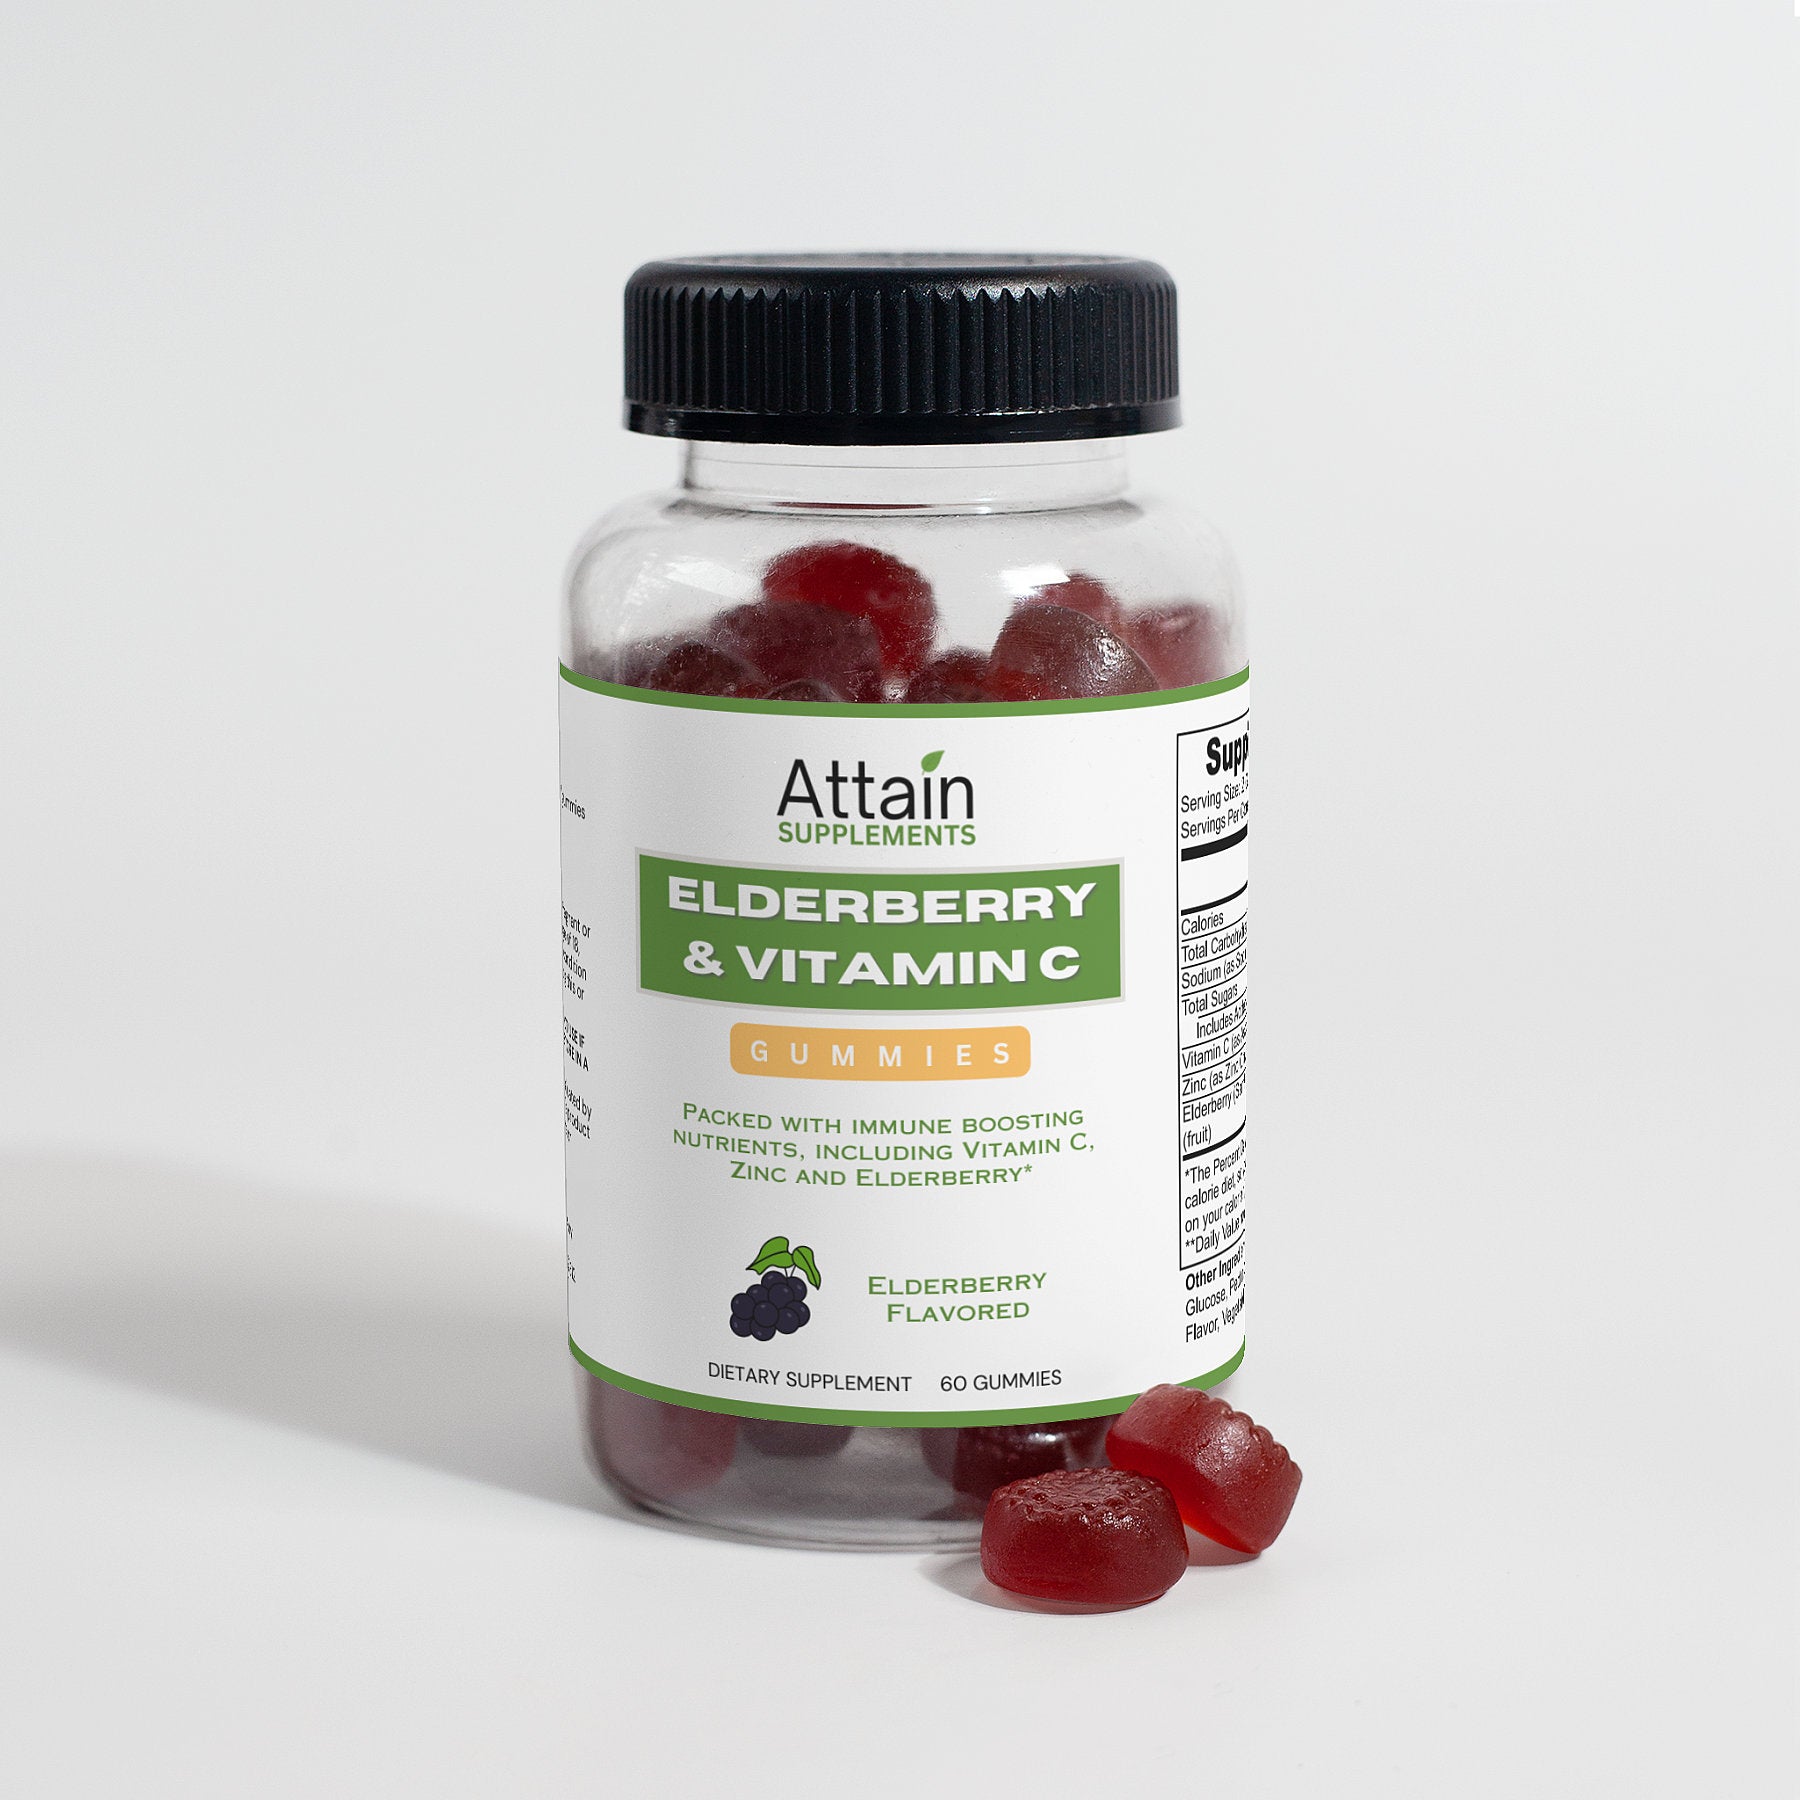 Elderberry & Vitamin C Gummies - Attain Supplements